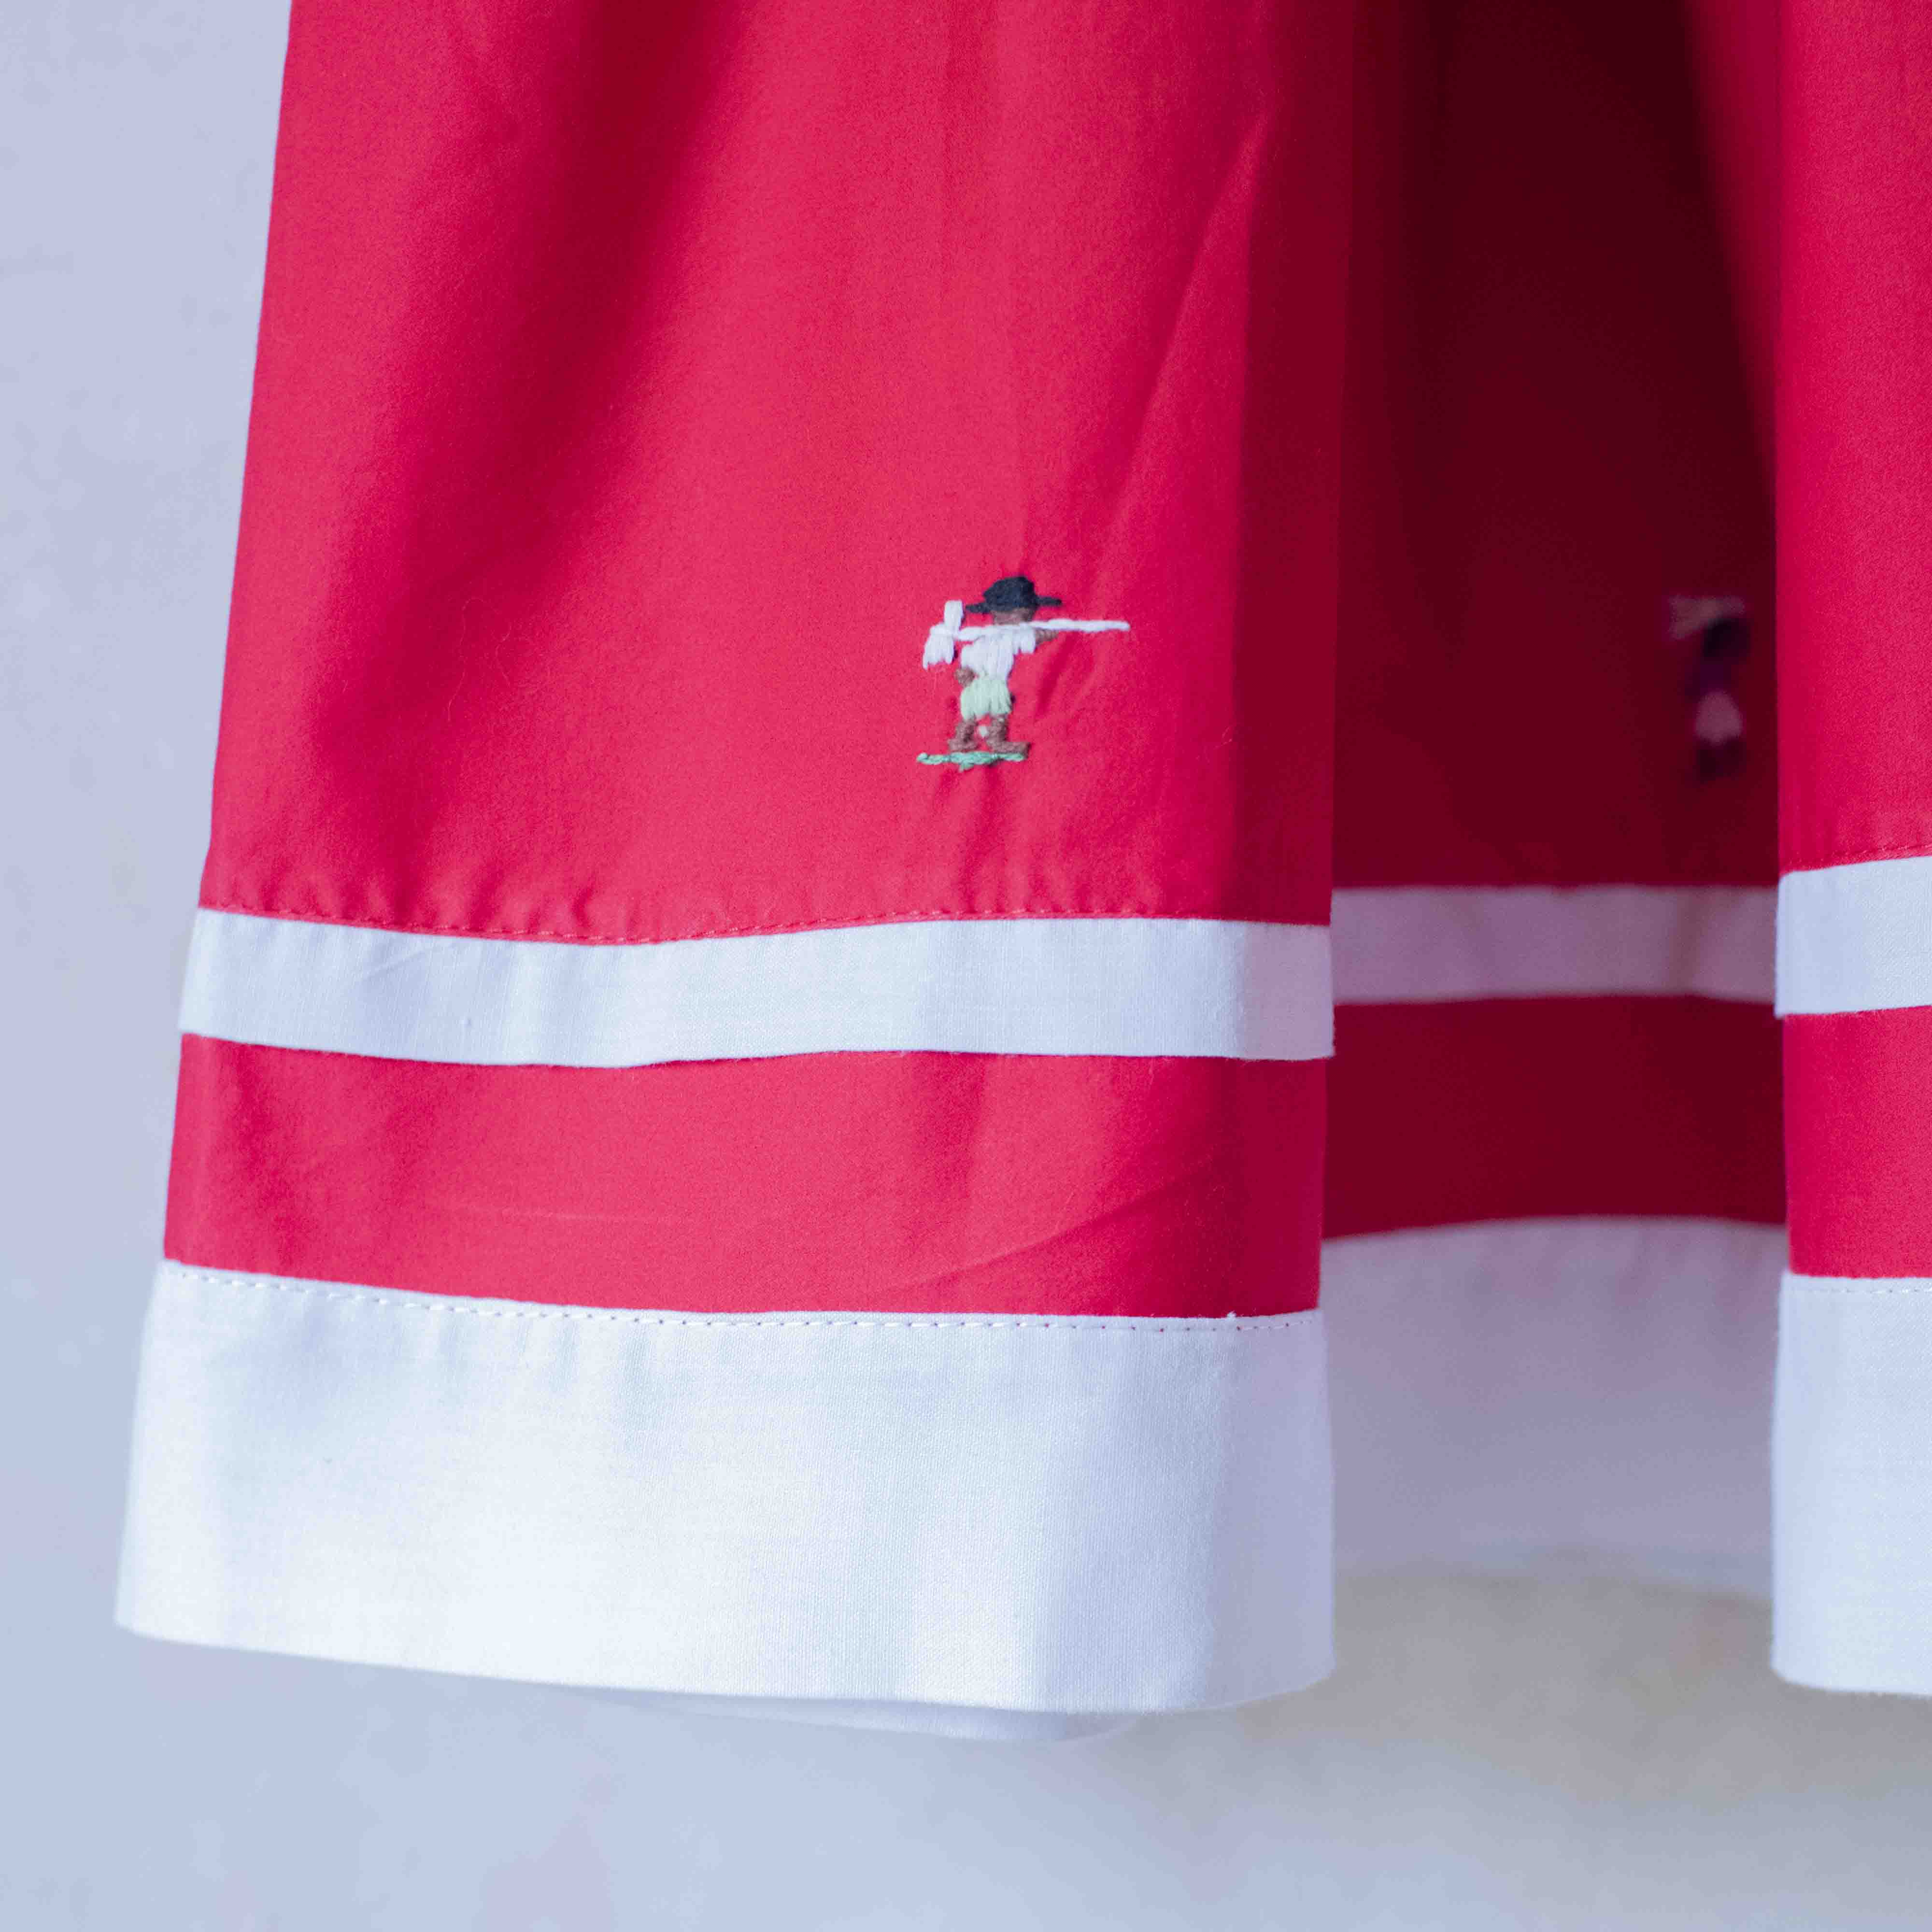 שמלה אדומה עם רקמות פועלים בגזרה מרהיבה | 6-7 שנים